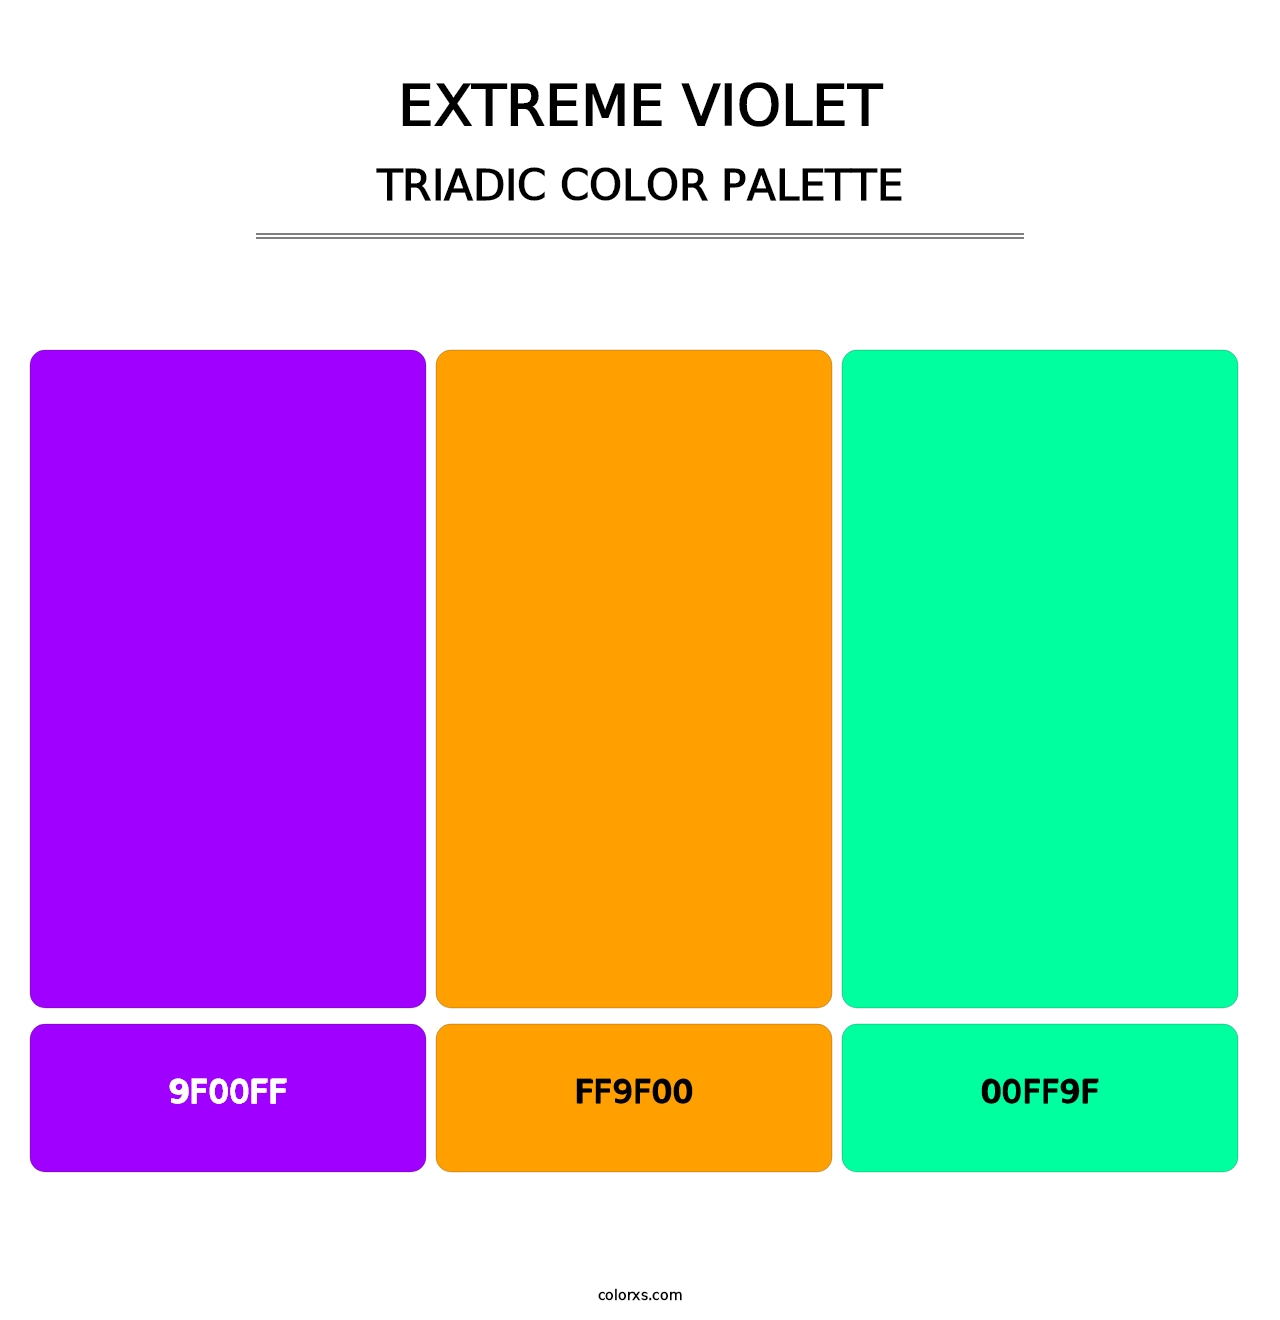 Extreme Violet - Triadic Color Palette